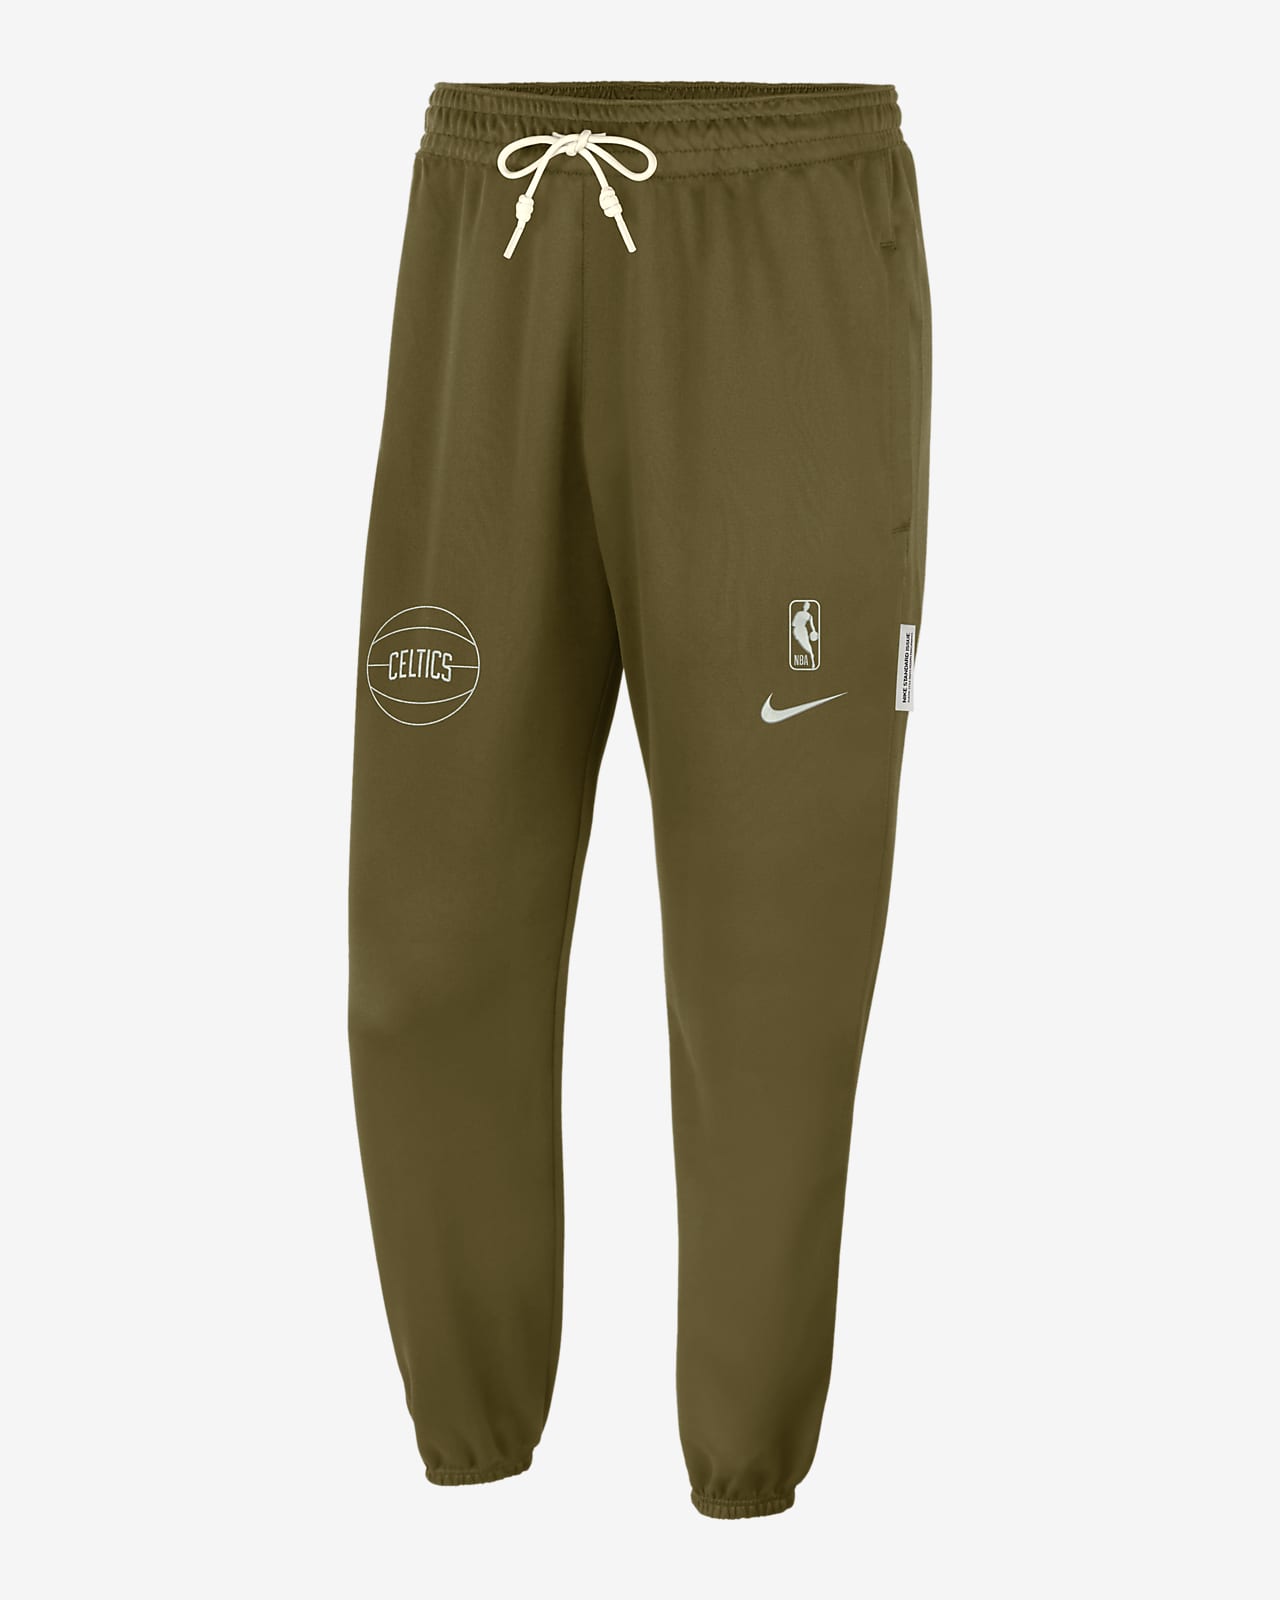 Boston Celtics Standard Issue Men's Nike Dri-FIT NBA Pants